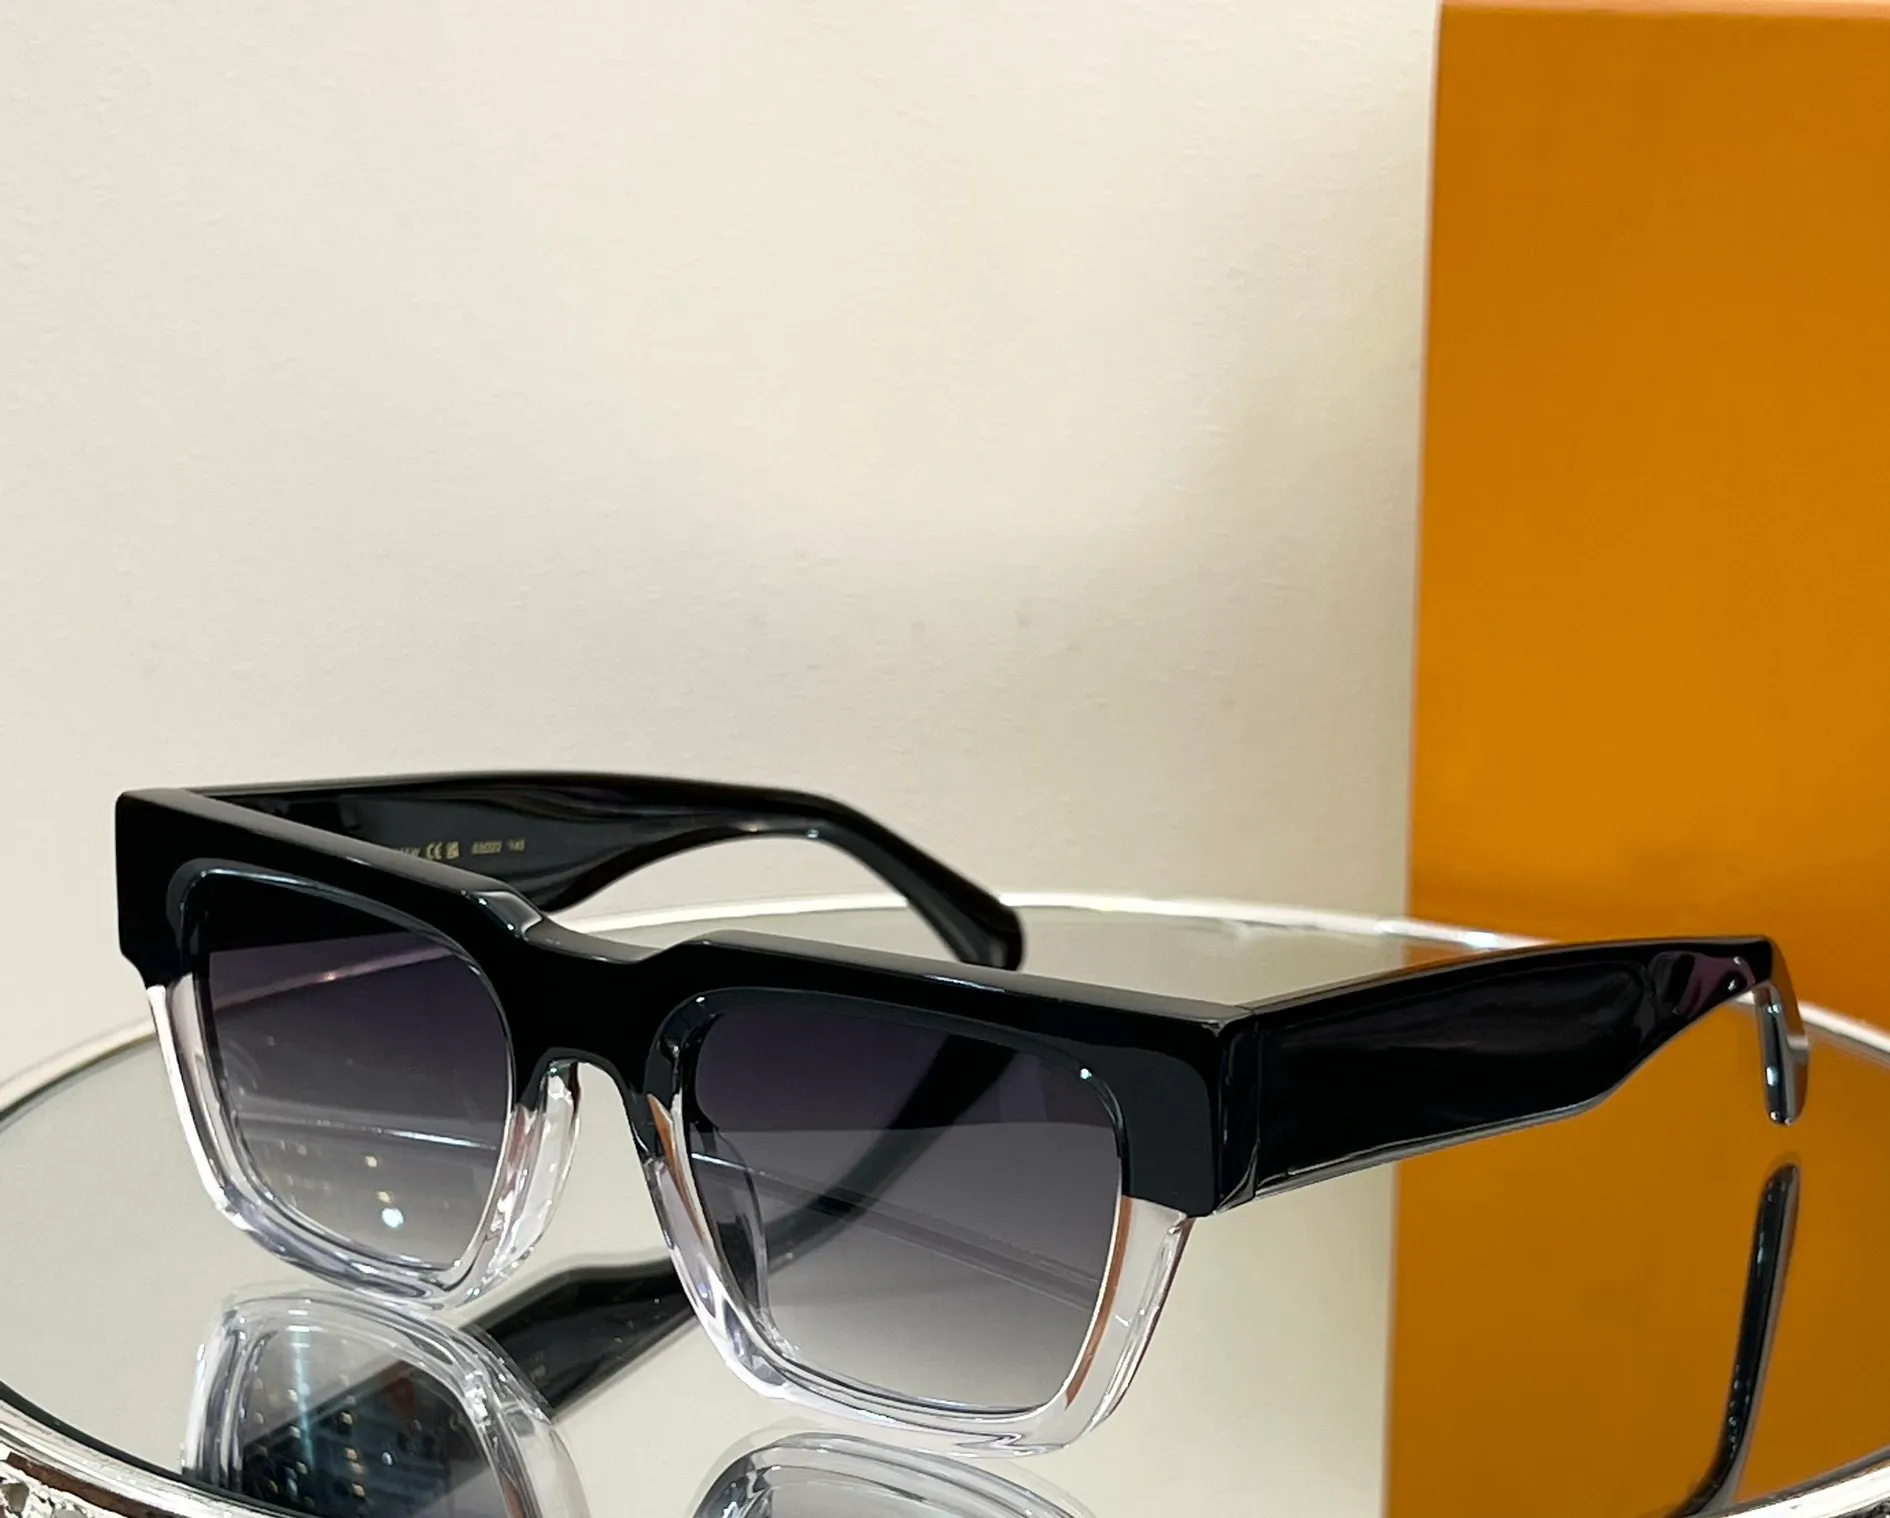 Квадратные солнцезащитные очки с черными кристаллами, мужские роскошные солнцезащитные очки серого цвета, модные летние солнцезащитные очки Sonnenbrille с защитой от ультрафиолета, очки с коробкой